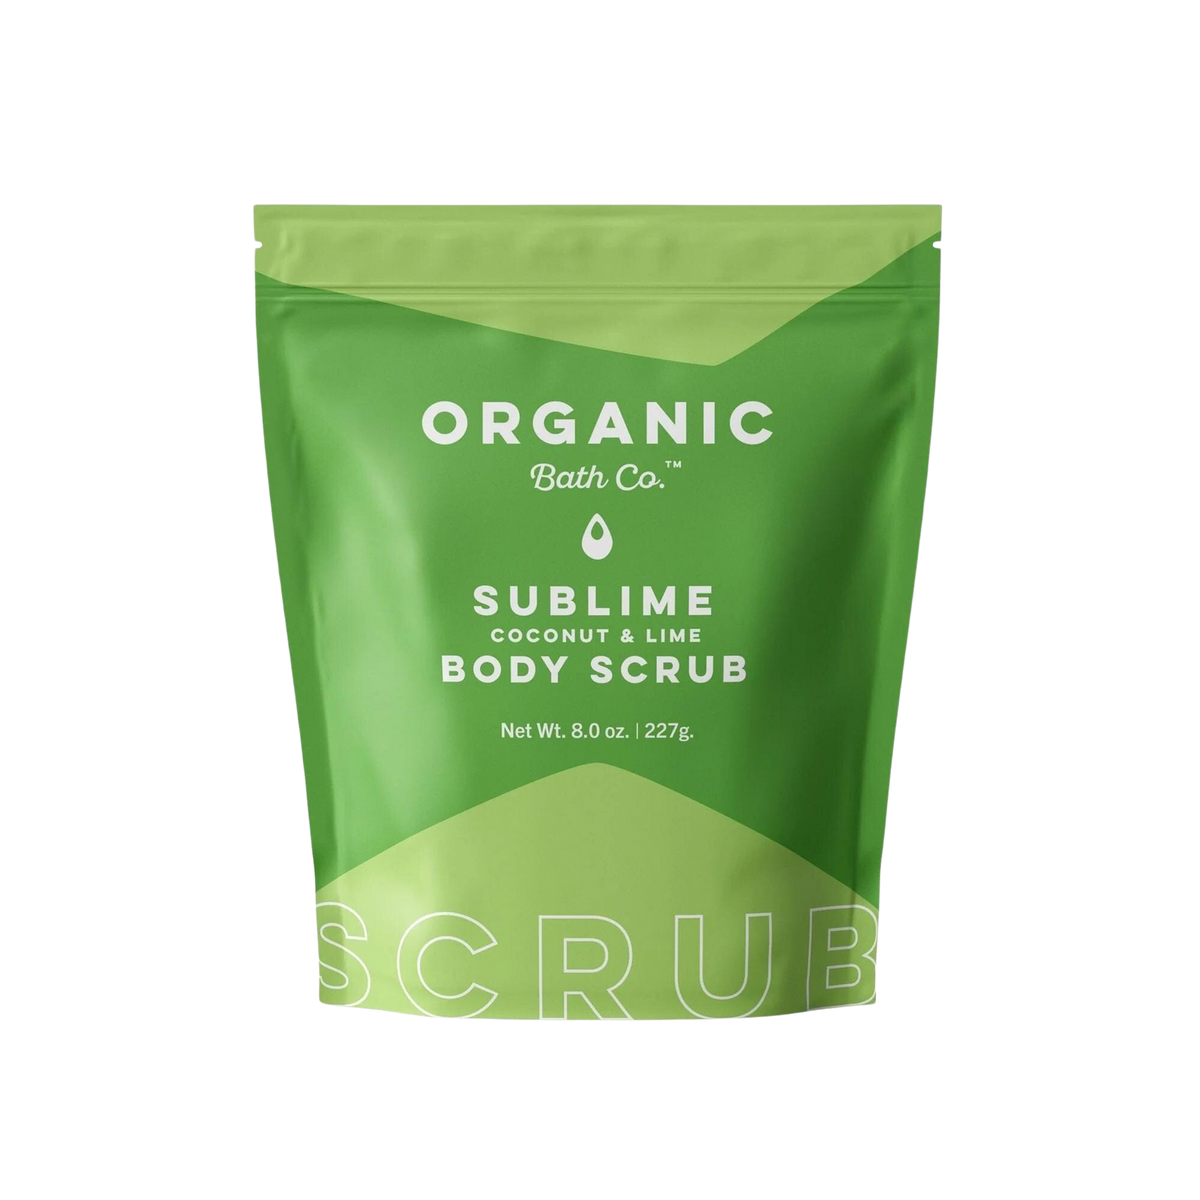 Organic Bath Co. SubLime Organic Body Scrub 8oz